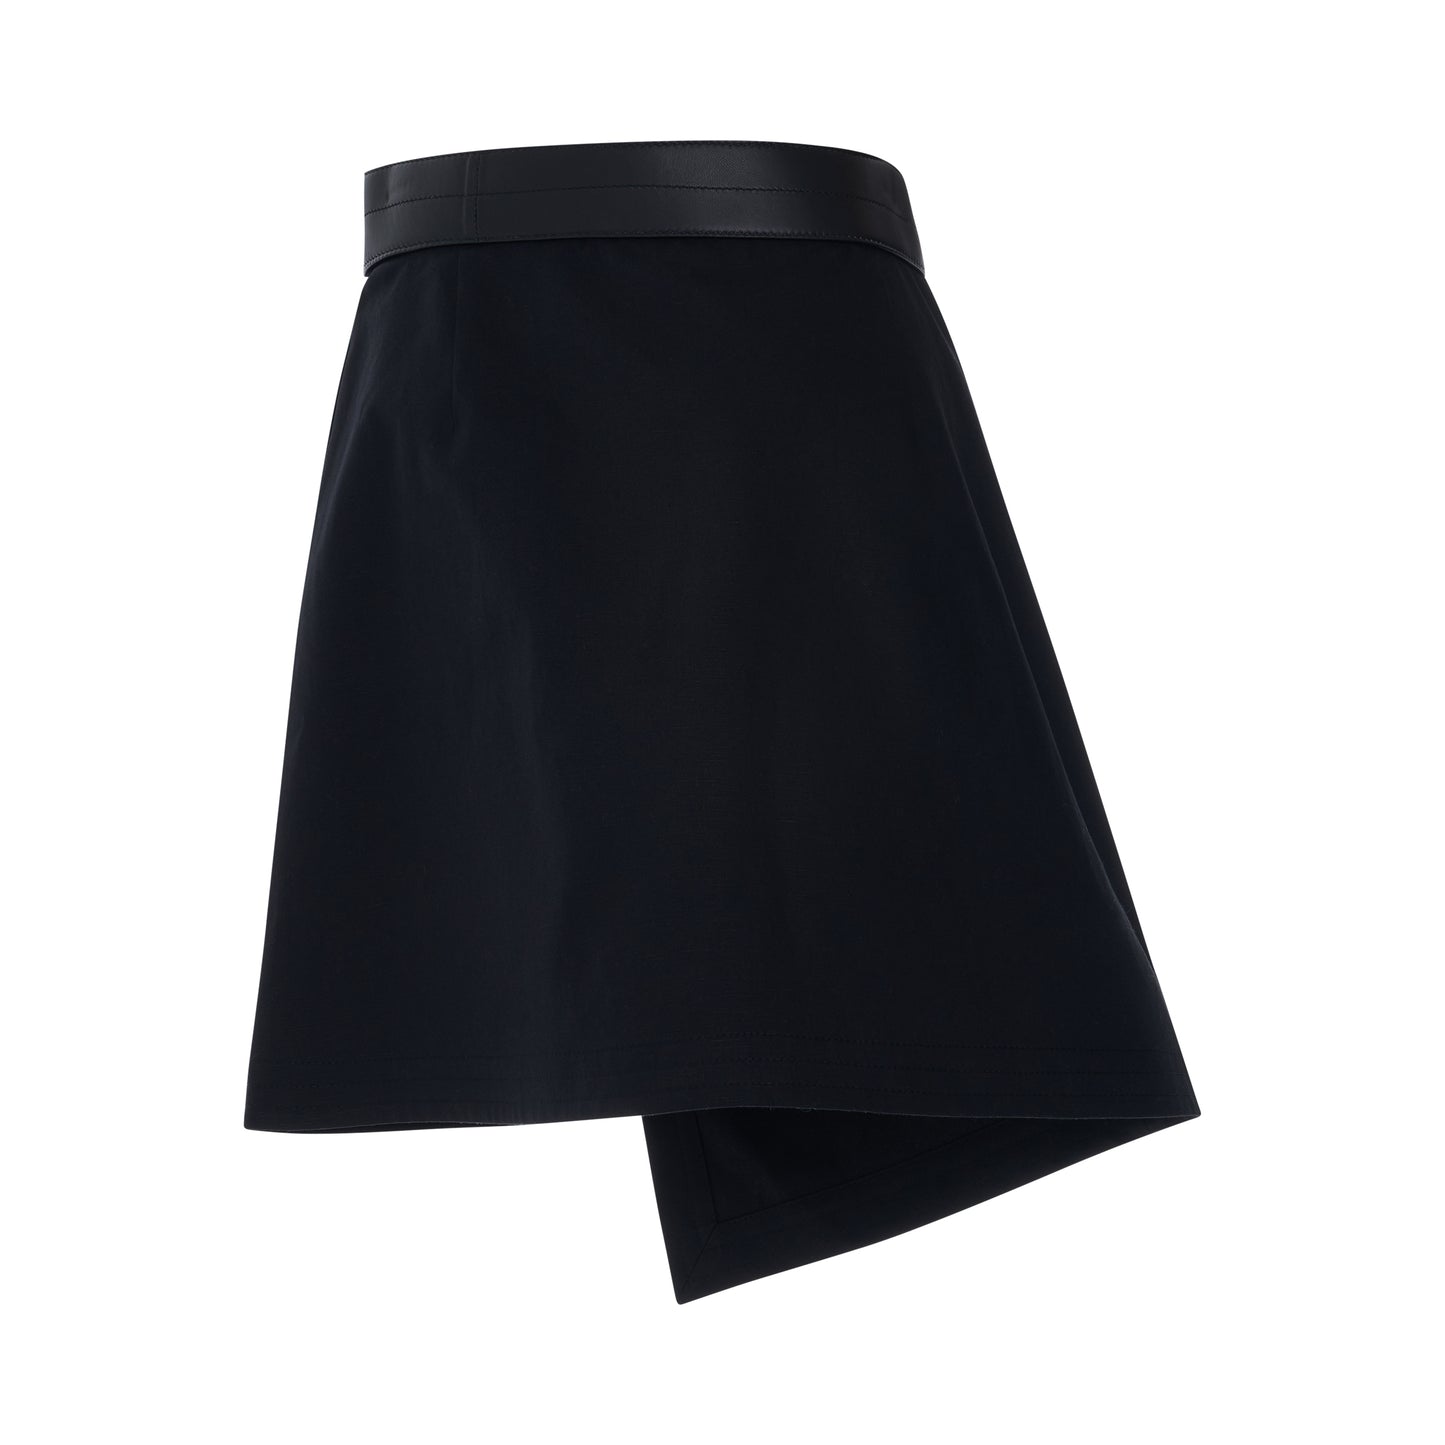 Trap Mini Skirt in Black